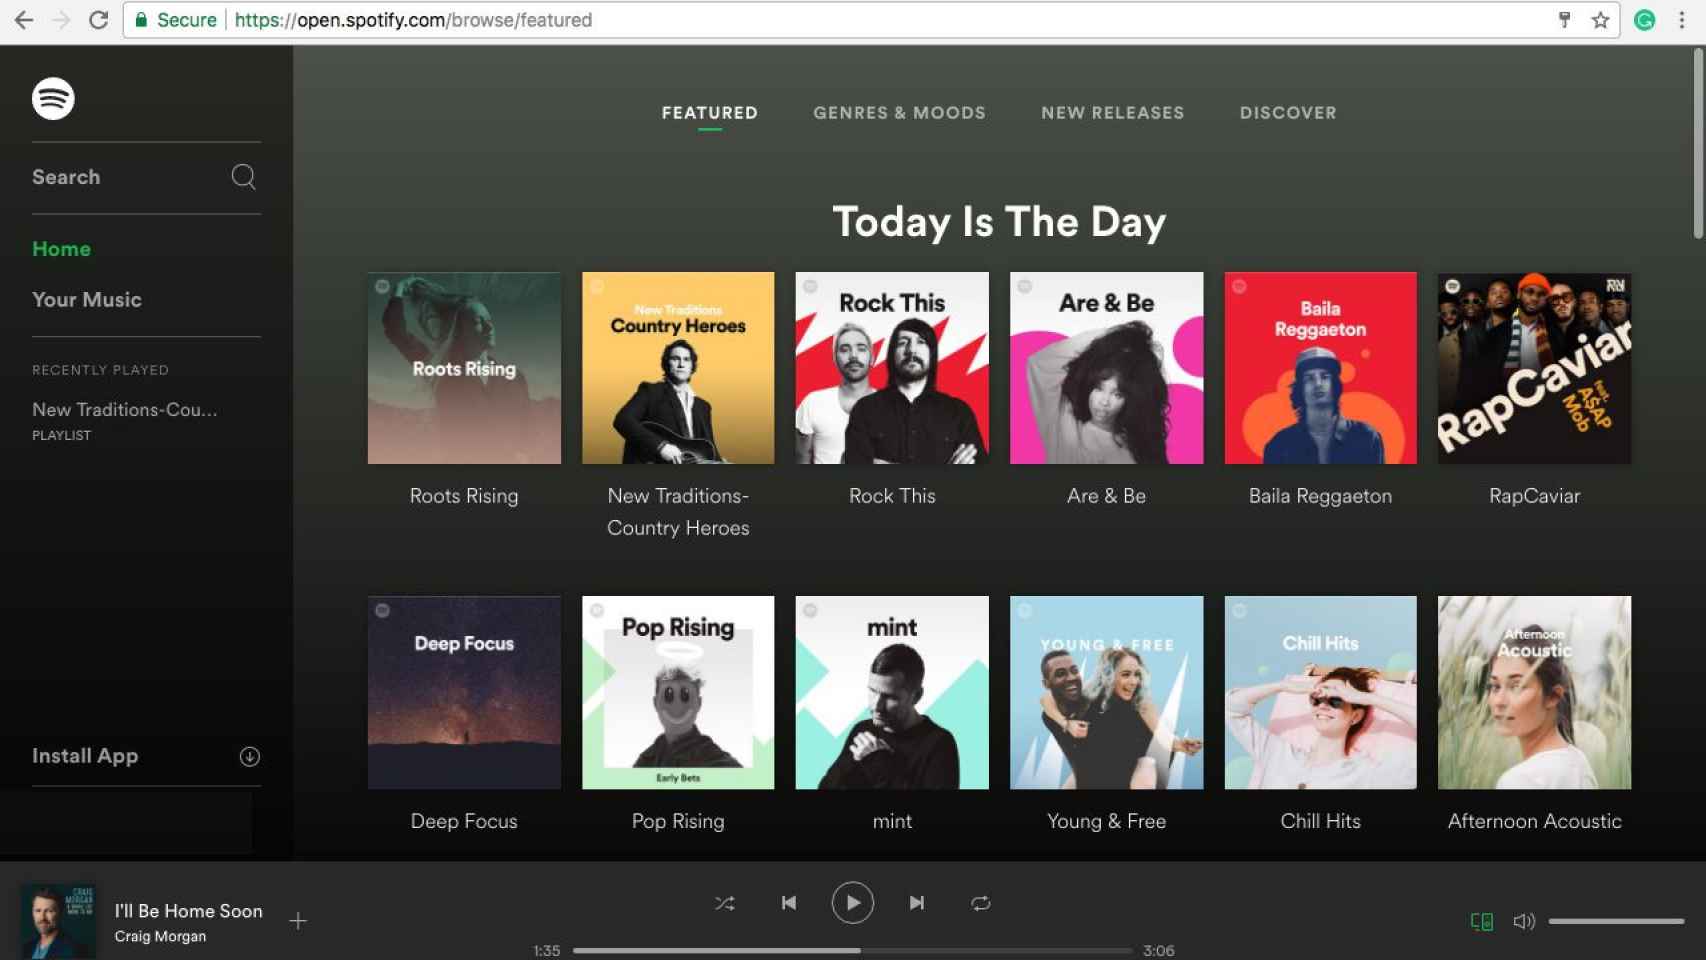 Captura de la web de Spotify